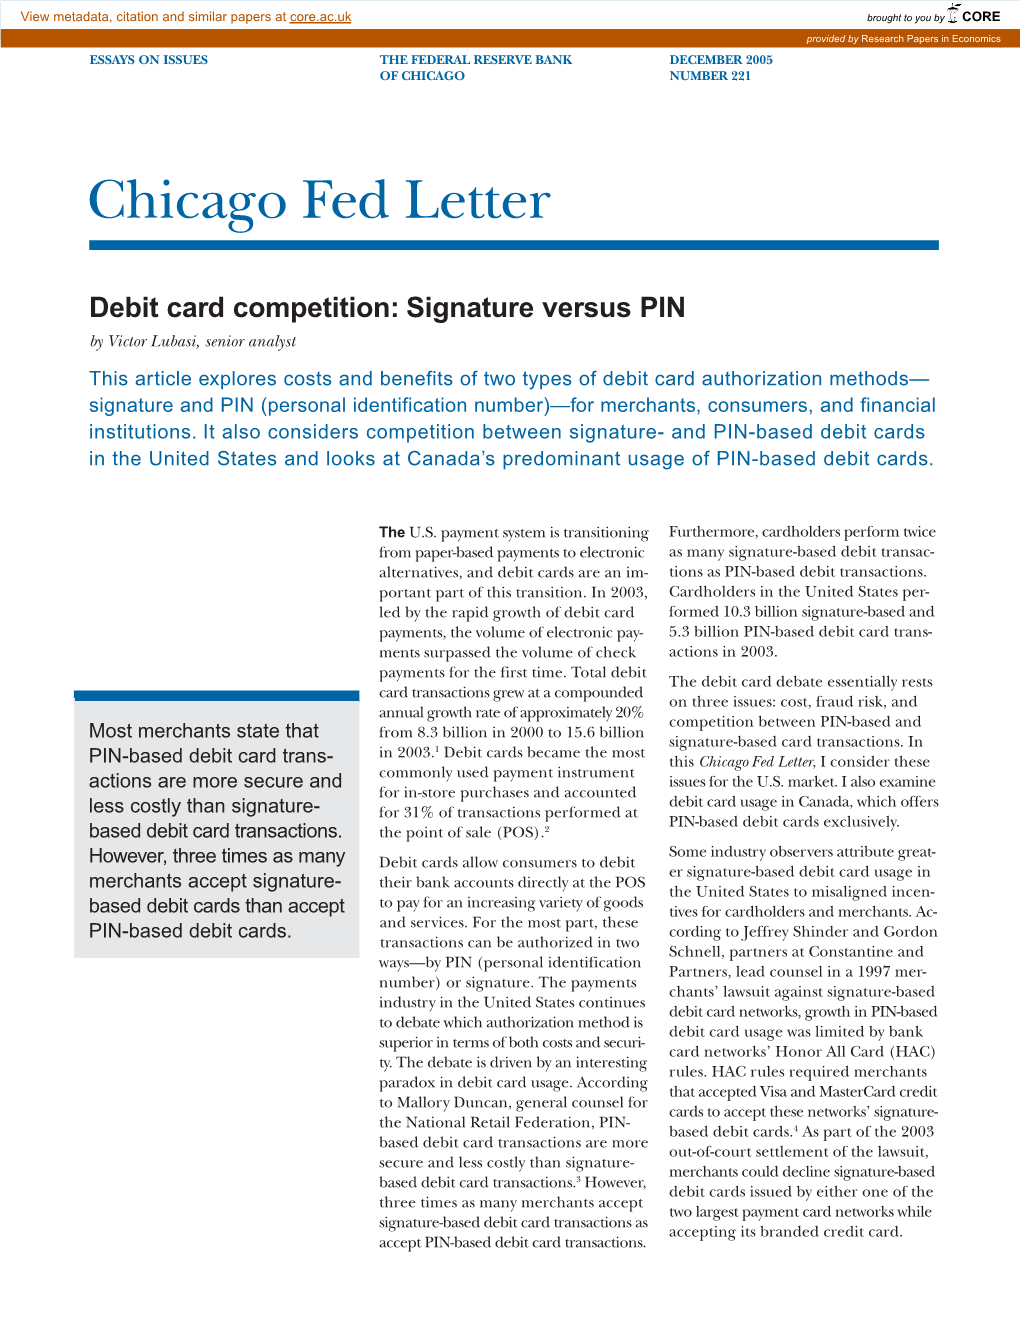 Debit Card Competition: Signature Versus PIN;